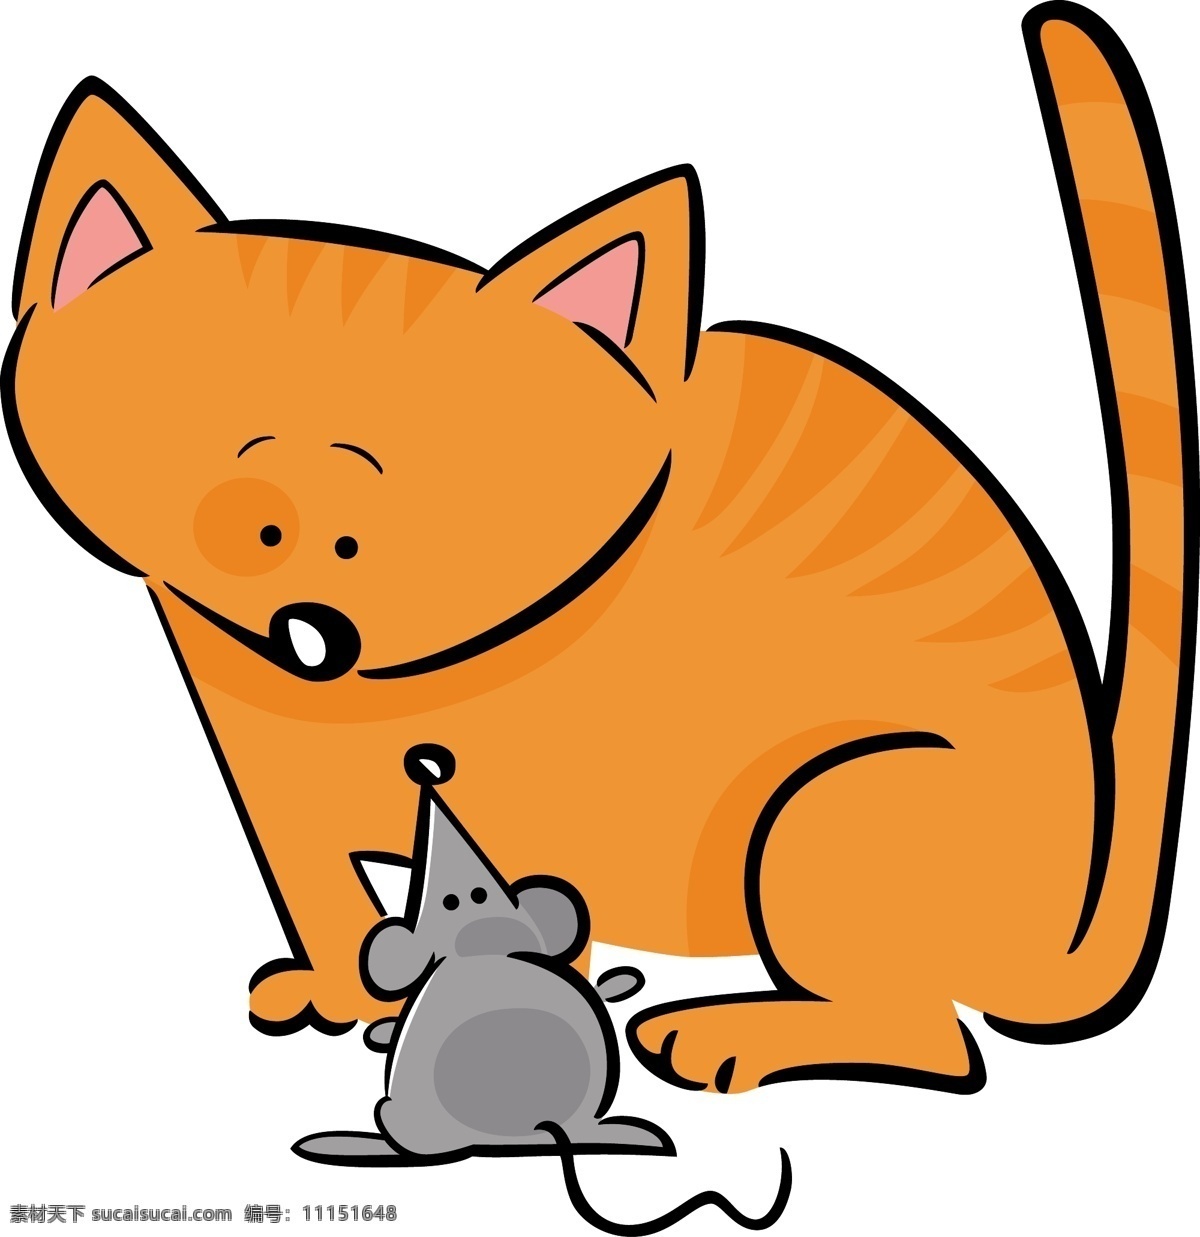 卡通 猫咪 老鼠 漫画 卡通老鼠 卡通猫咪 卡通小猫 卡通动物漫画 动物插画 动物插图 耗子 陆地动物 生物世界 矢量素材